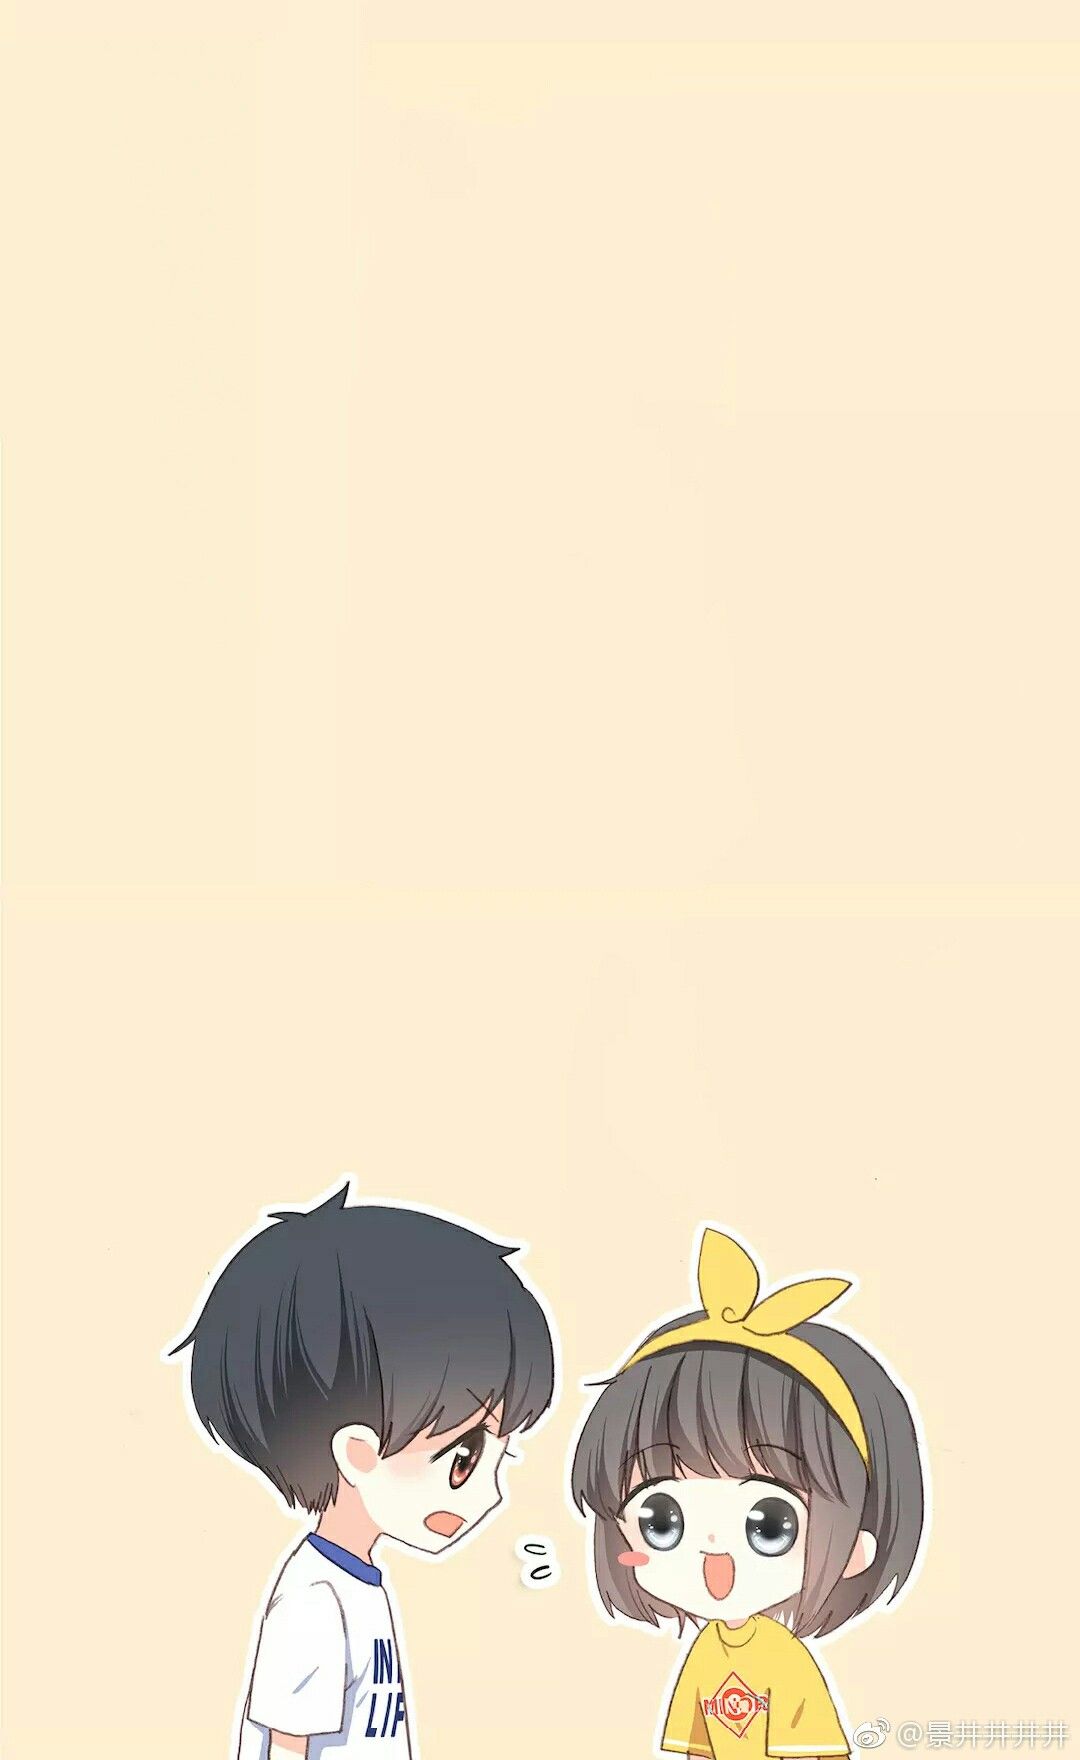 Hình Anime Cặp Đôi Dễ Thương, 333+ Ảnh Anime Đôi Đẹp Cute, Ngầu, Đáng Yêu  Nhất